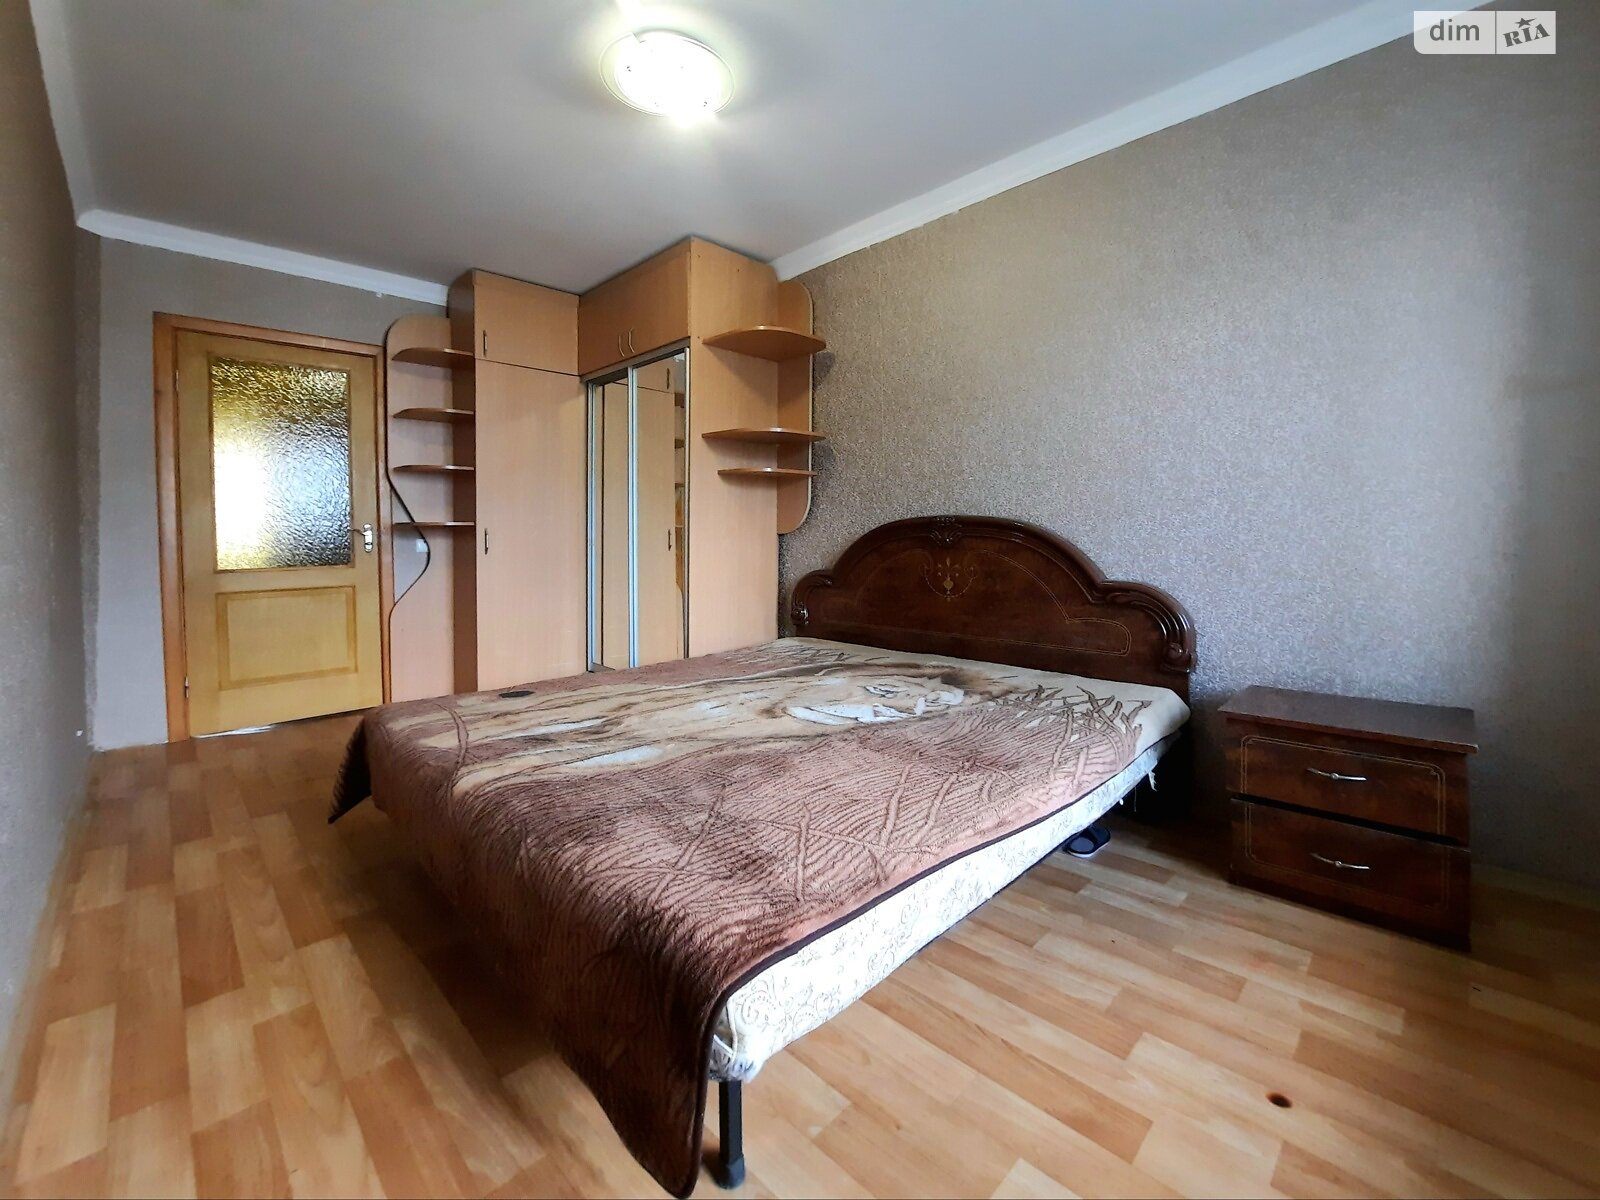 Продажа трехкомнатной квартиры в Кременчуге, на ул. Переяславская 40, район Нагорная часть фото 1